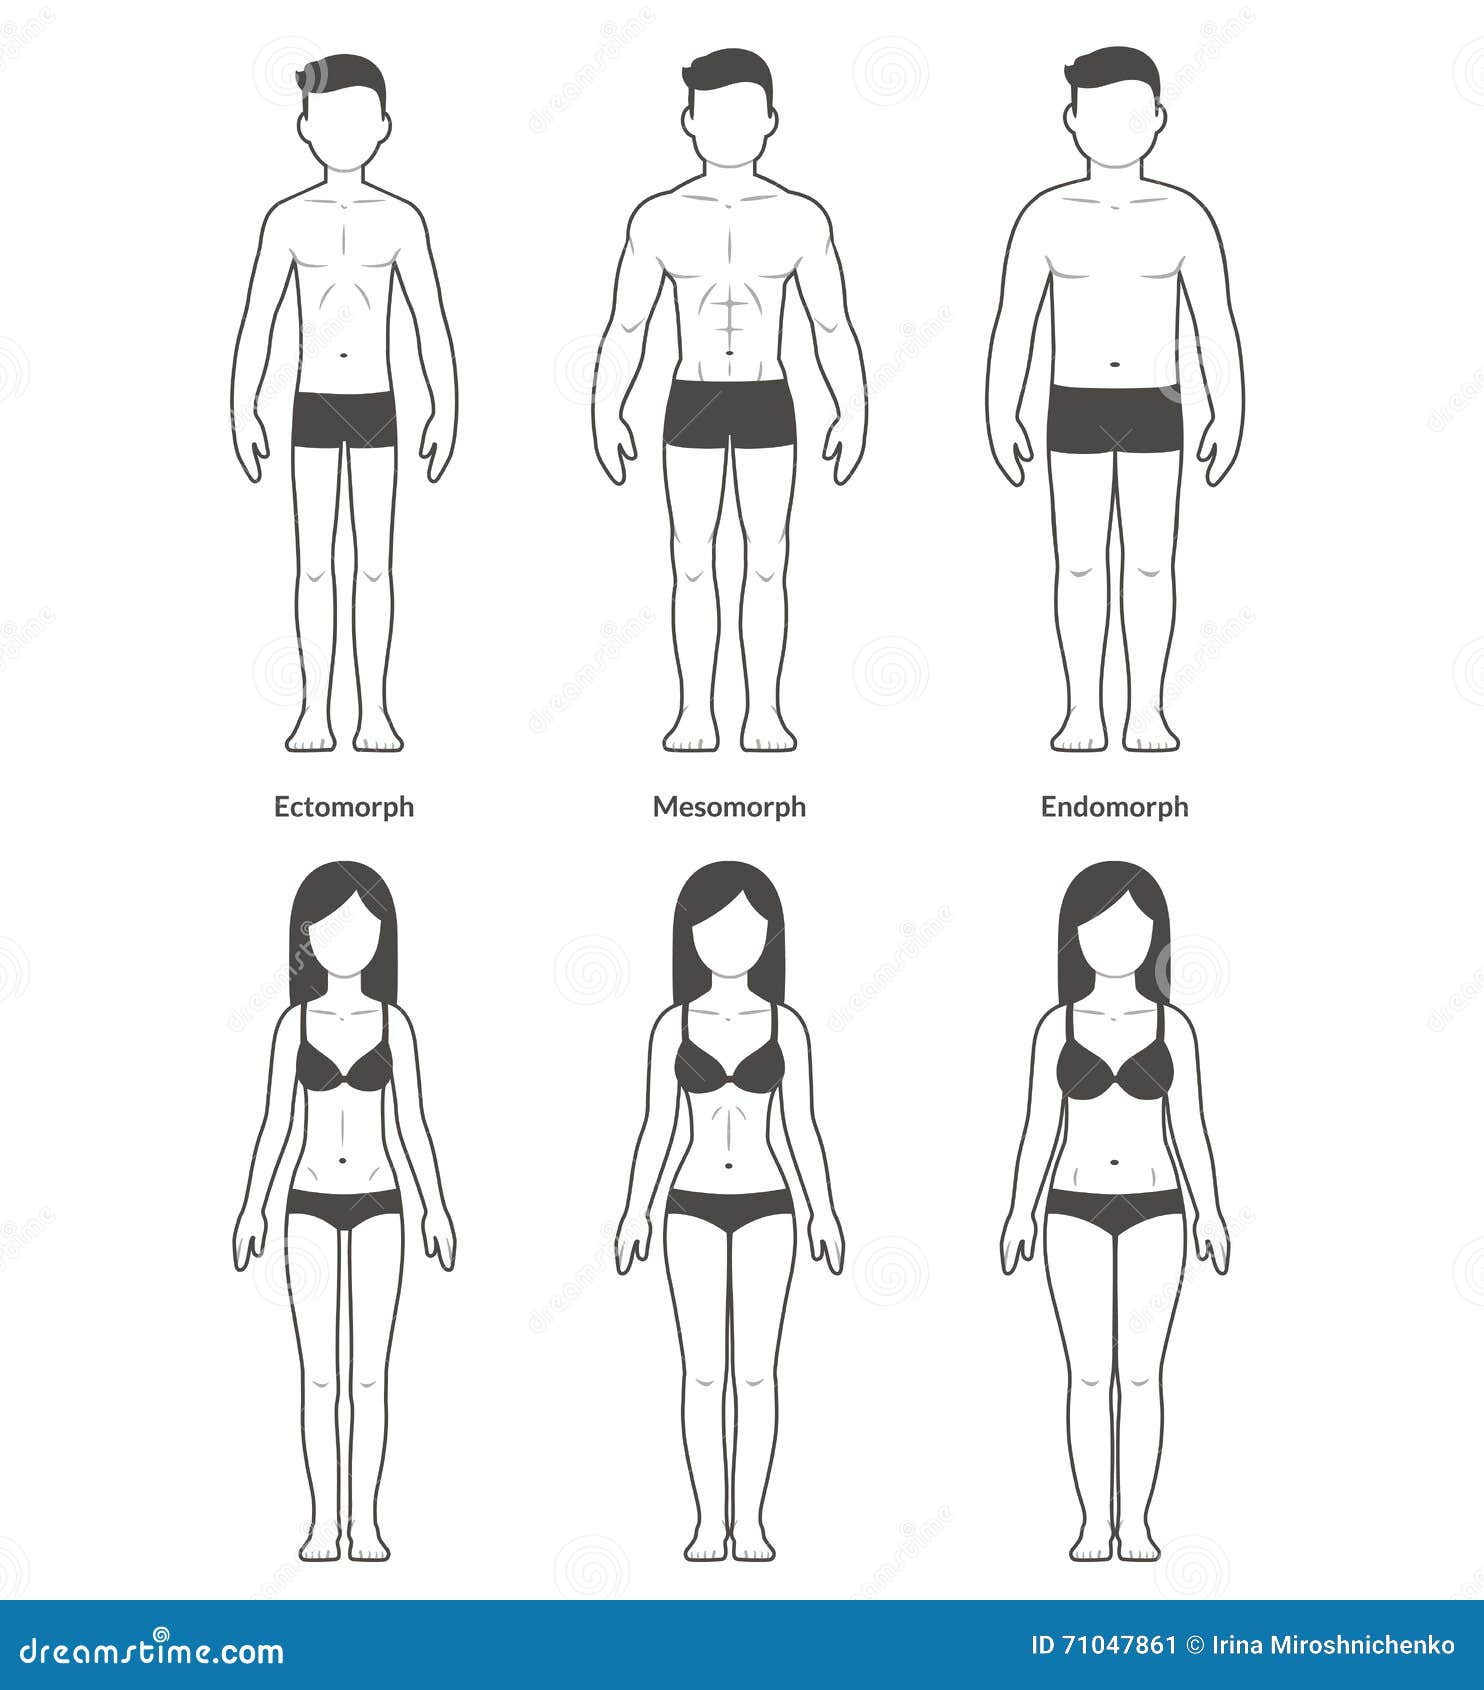 https://thumbs.dreamstime.com/z/male-female-body-types-ectomorph-mesomorph-endomorph-skinny-muscular-fat-bodytypes-fitness-health-illustration-71047861.jpg